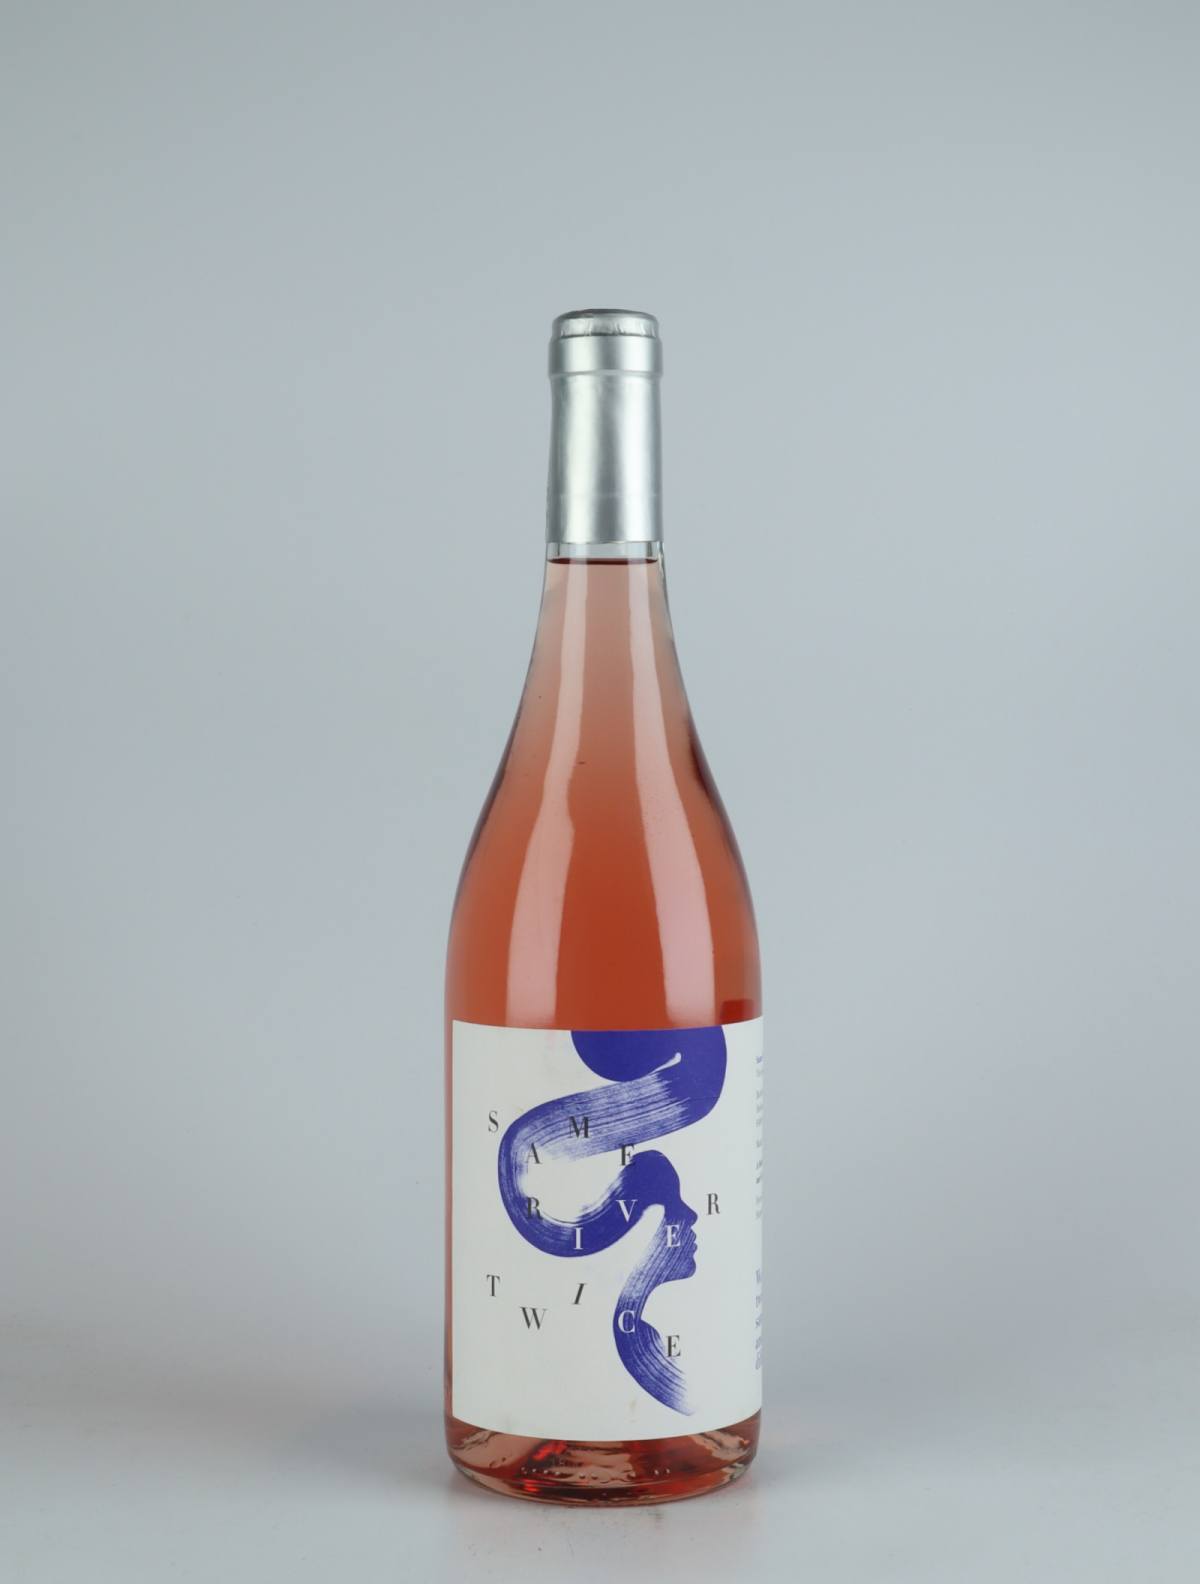 En flaske 2021 Same River Twice Rosé Rosé fra Heliocentric Wines, Rhône i Frankrig